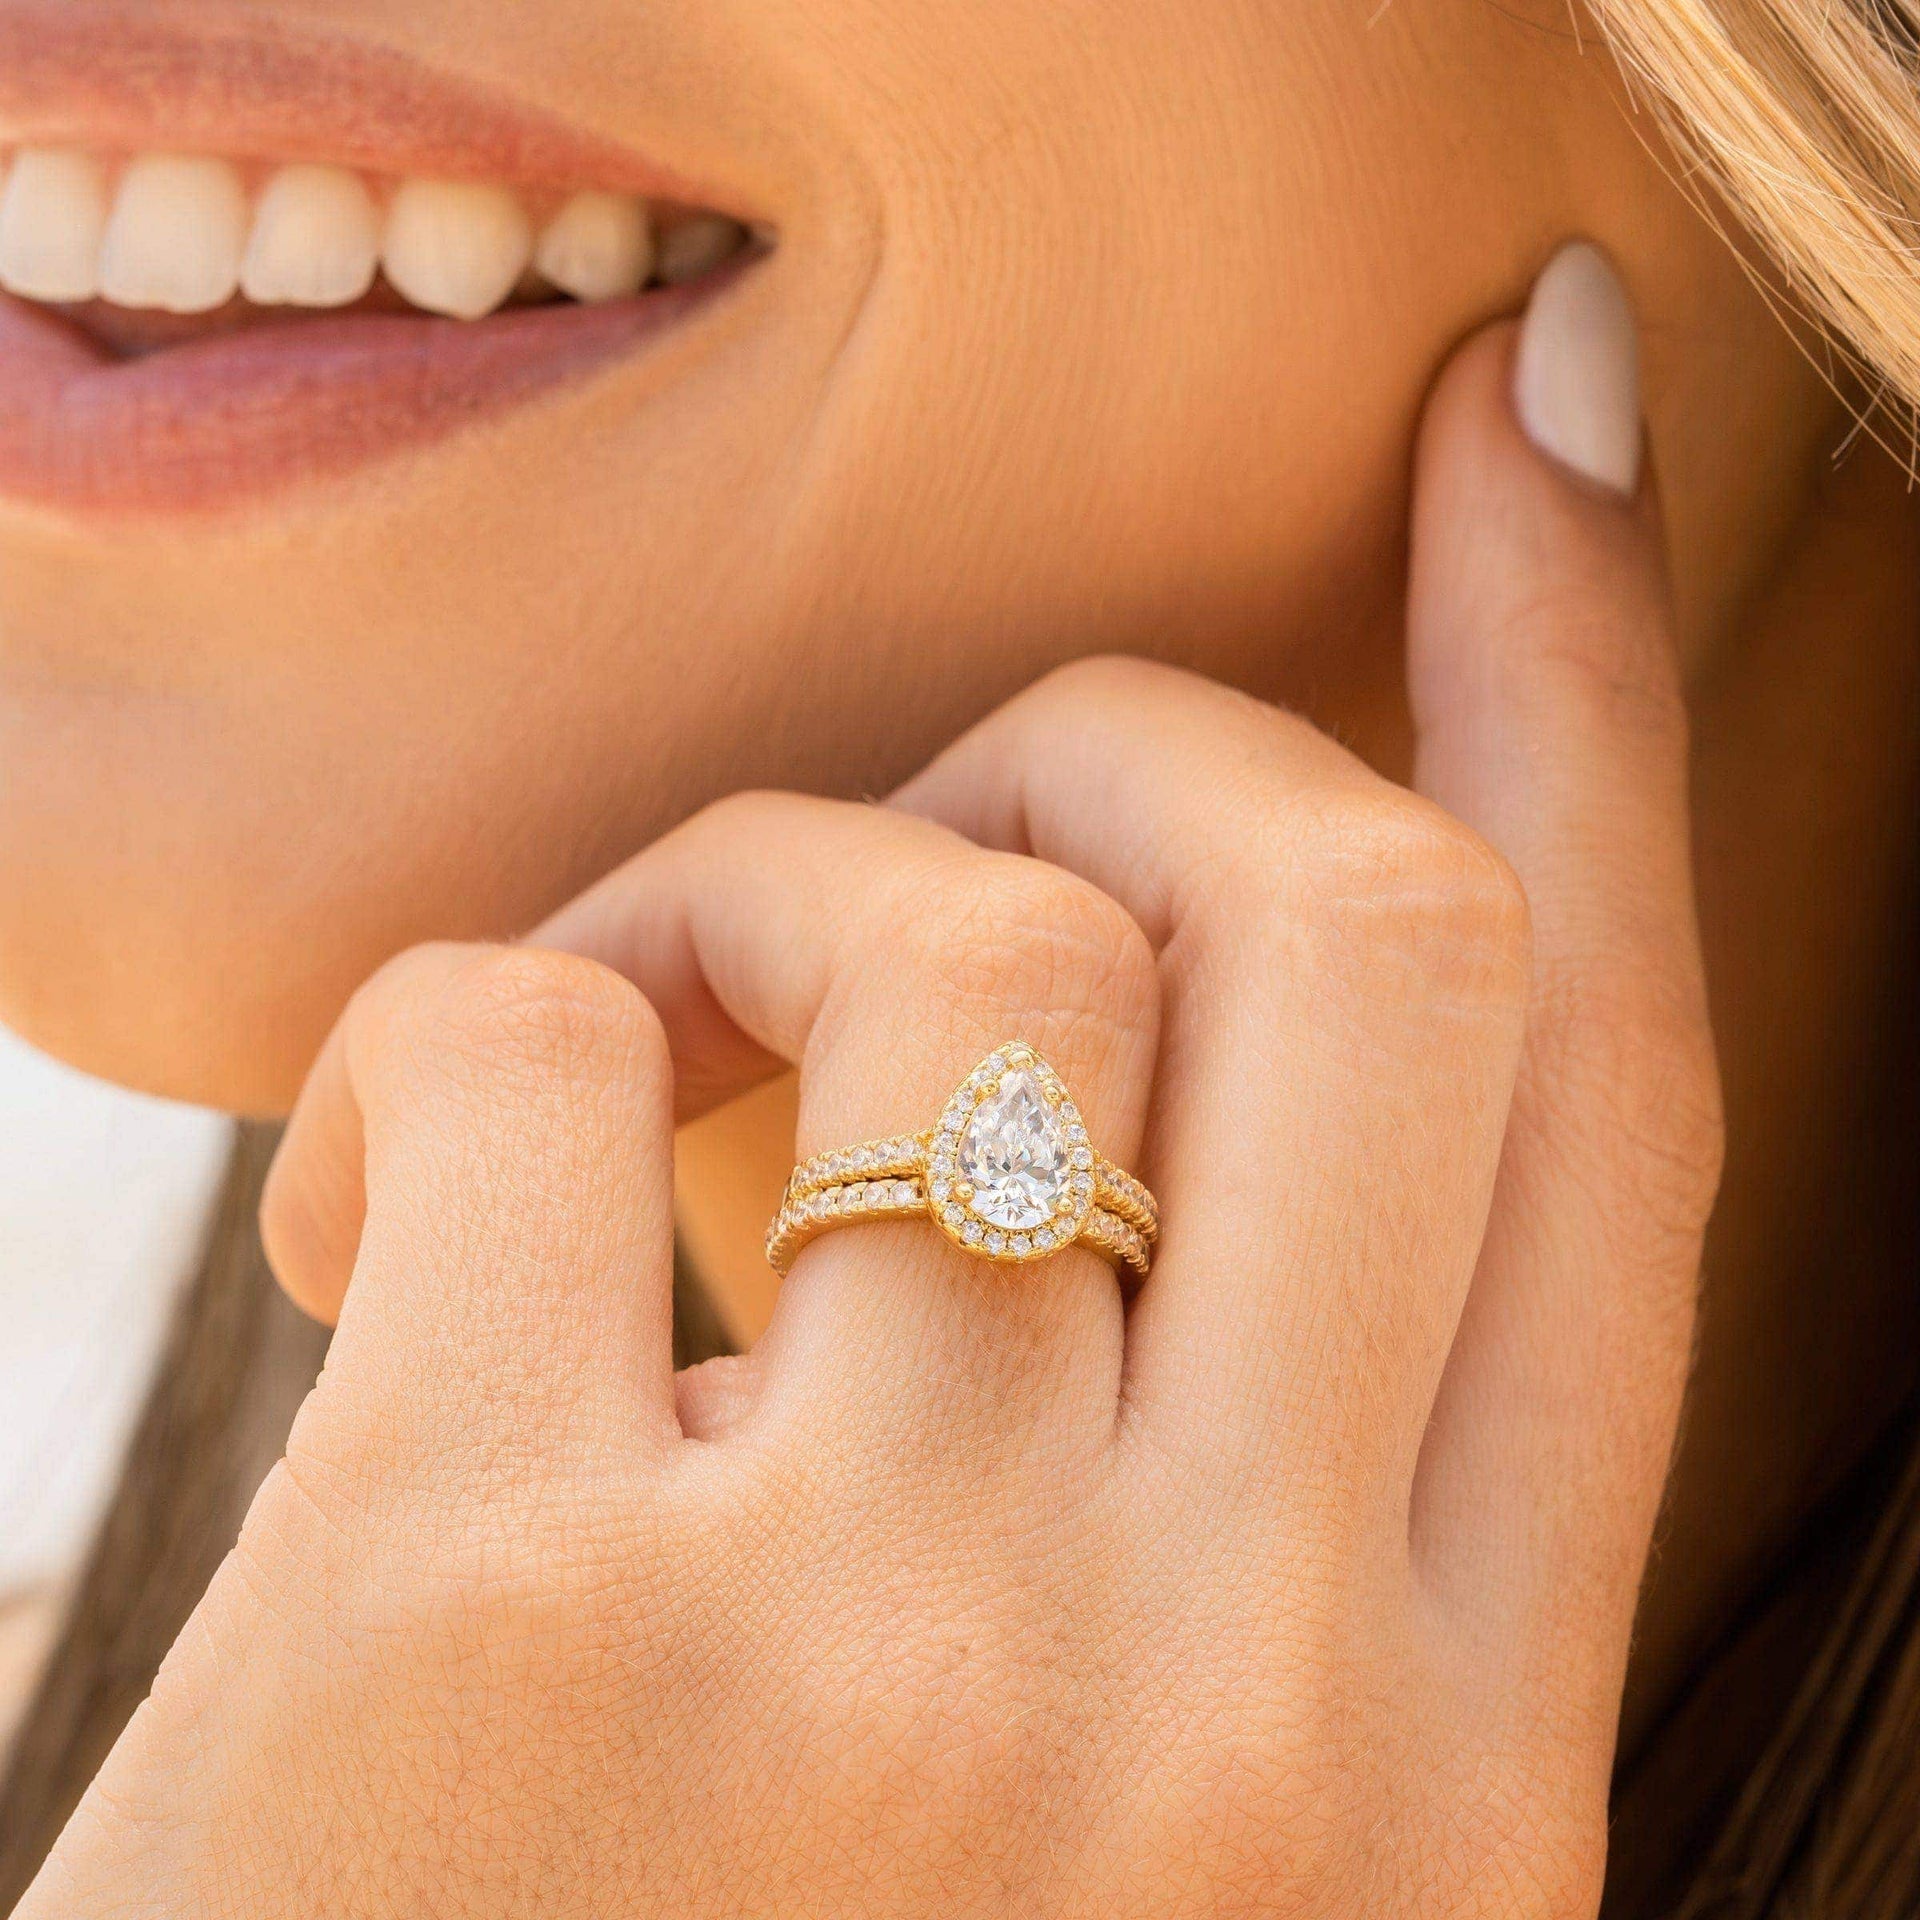 woman wearing gold shaped wedding ring set